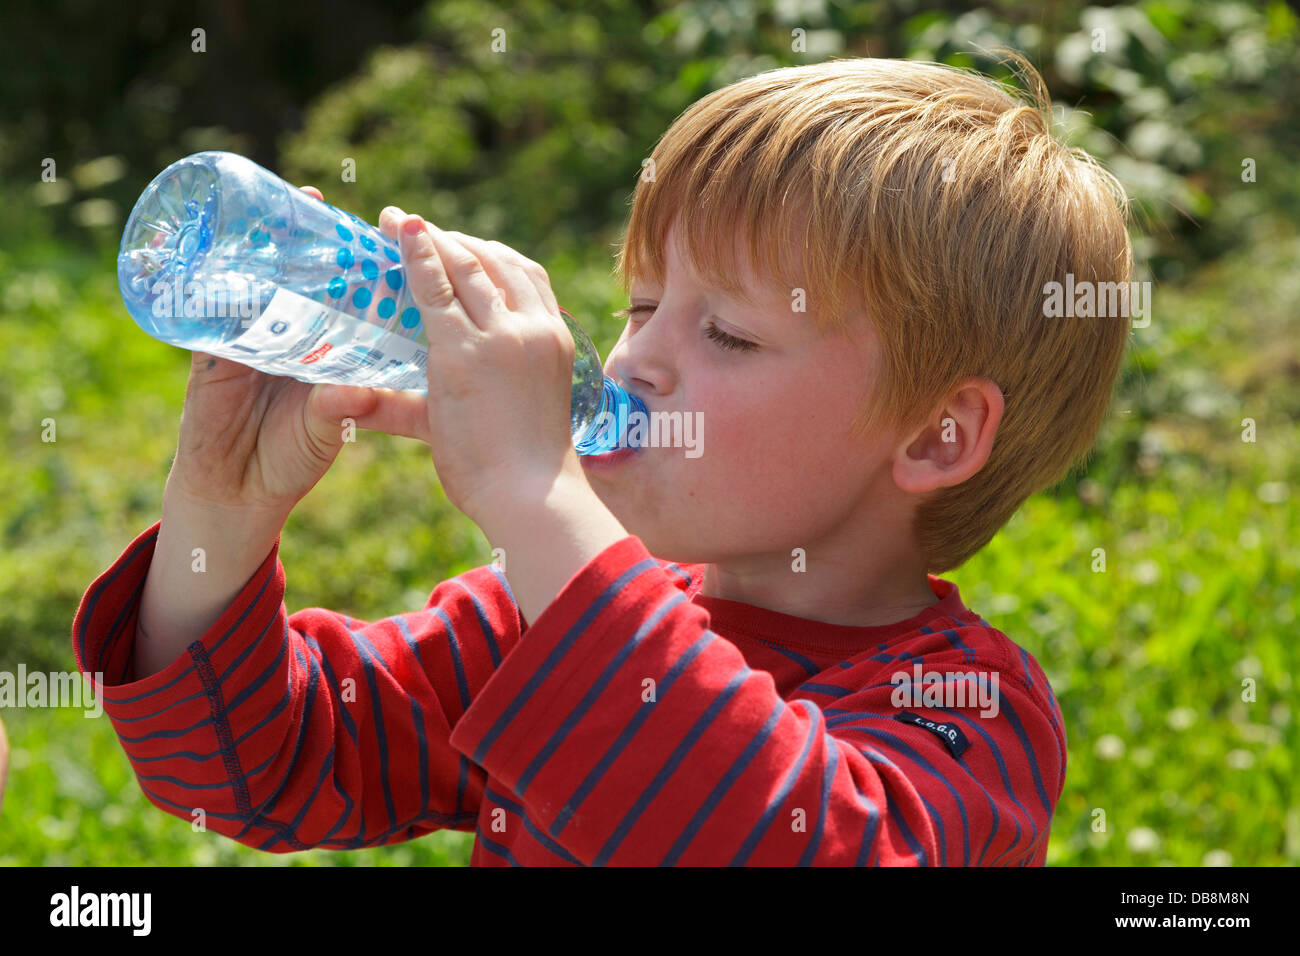 Jeune garçon d'une bouteille d'eau potable Banque D'Images